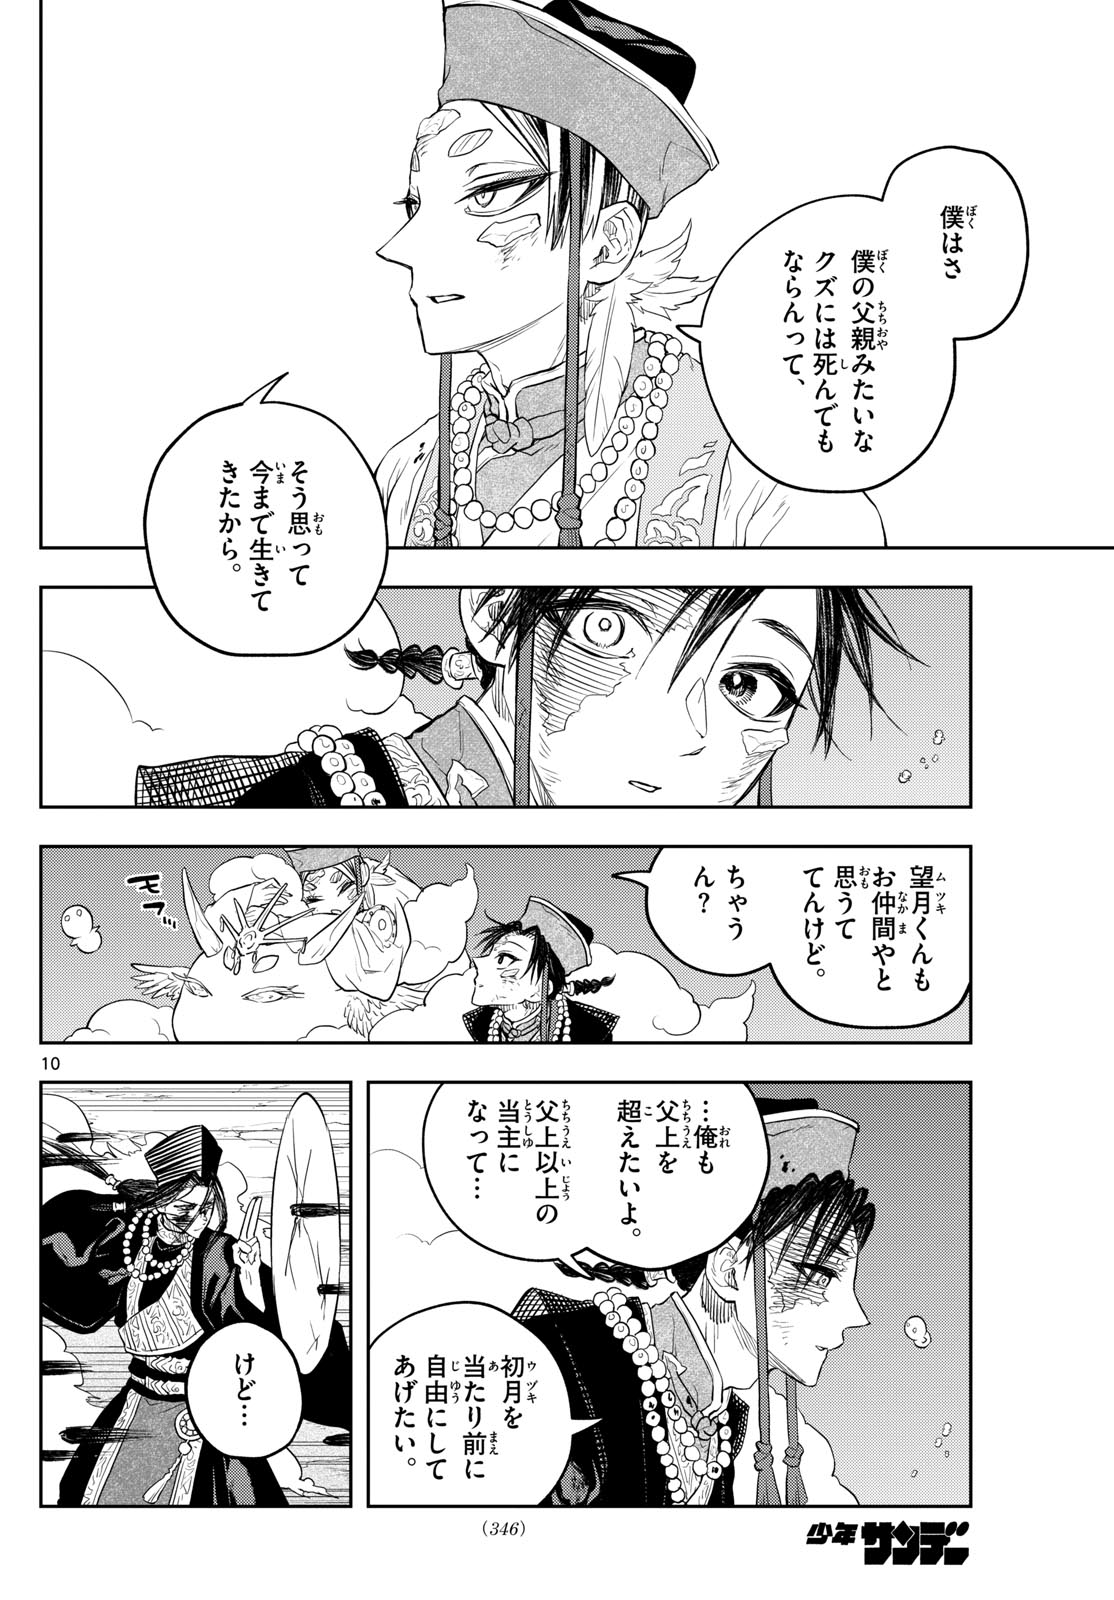 Akatsuki Jihen - Chapter 38 - Page 10